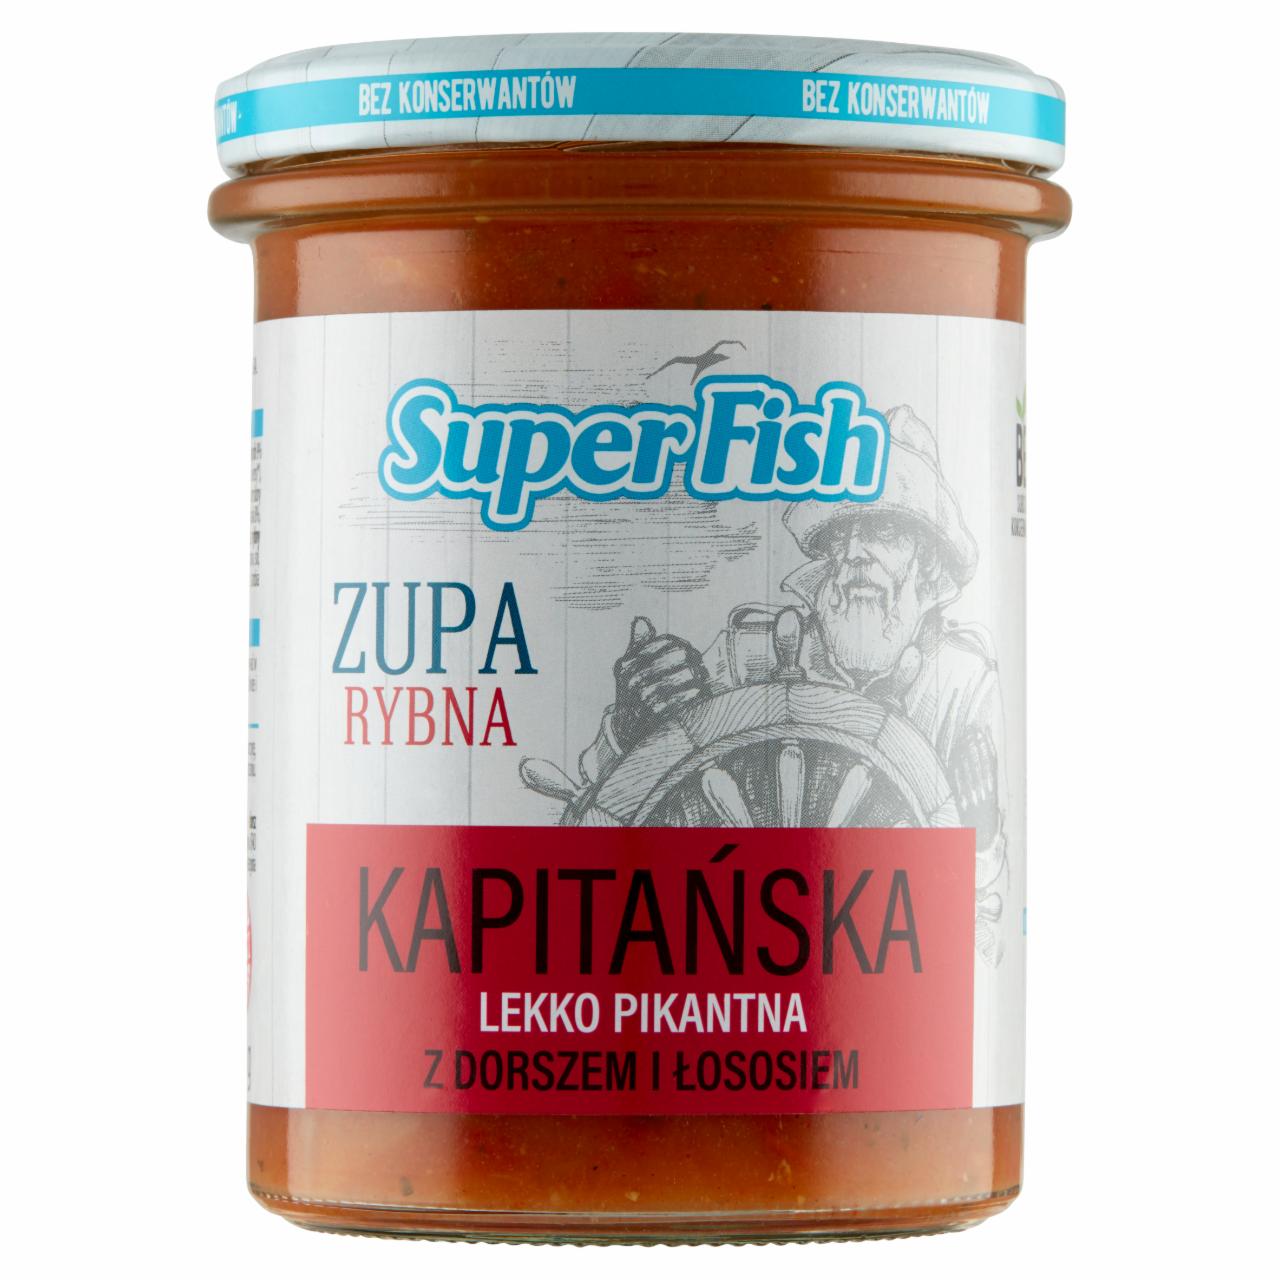 Zdjęcia - SuperFish Zupa rybna kapitańska lekko pikantna z dorszem i łososiem 380 g